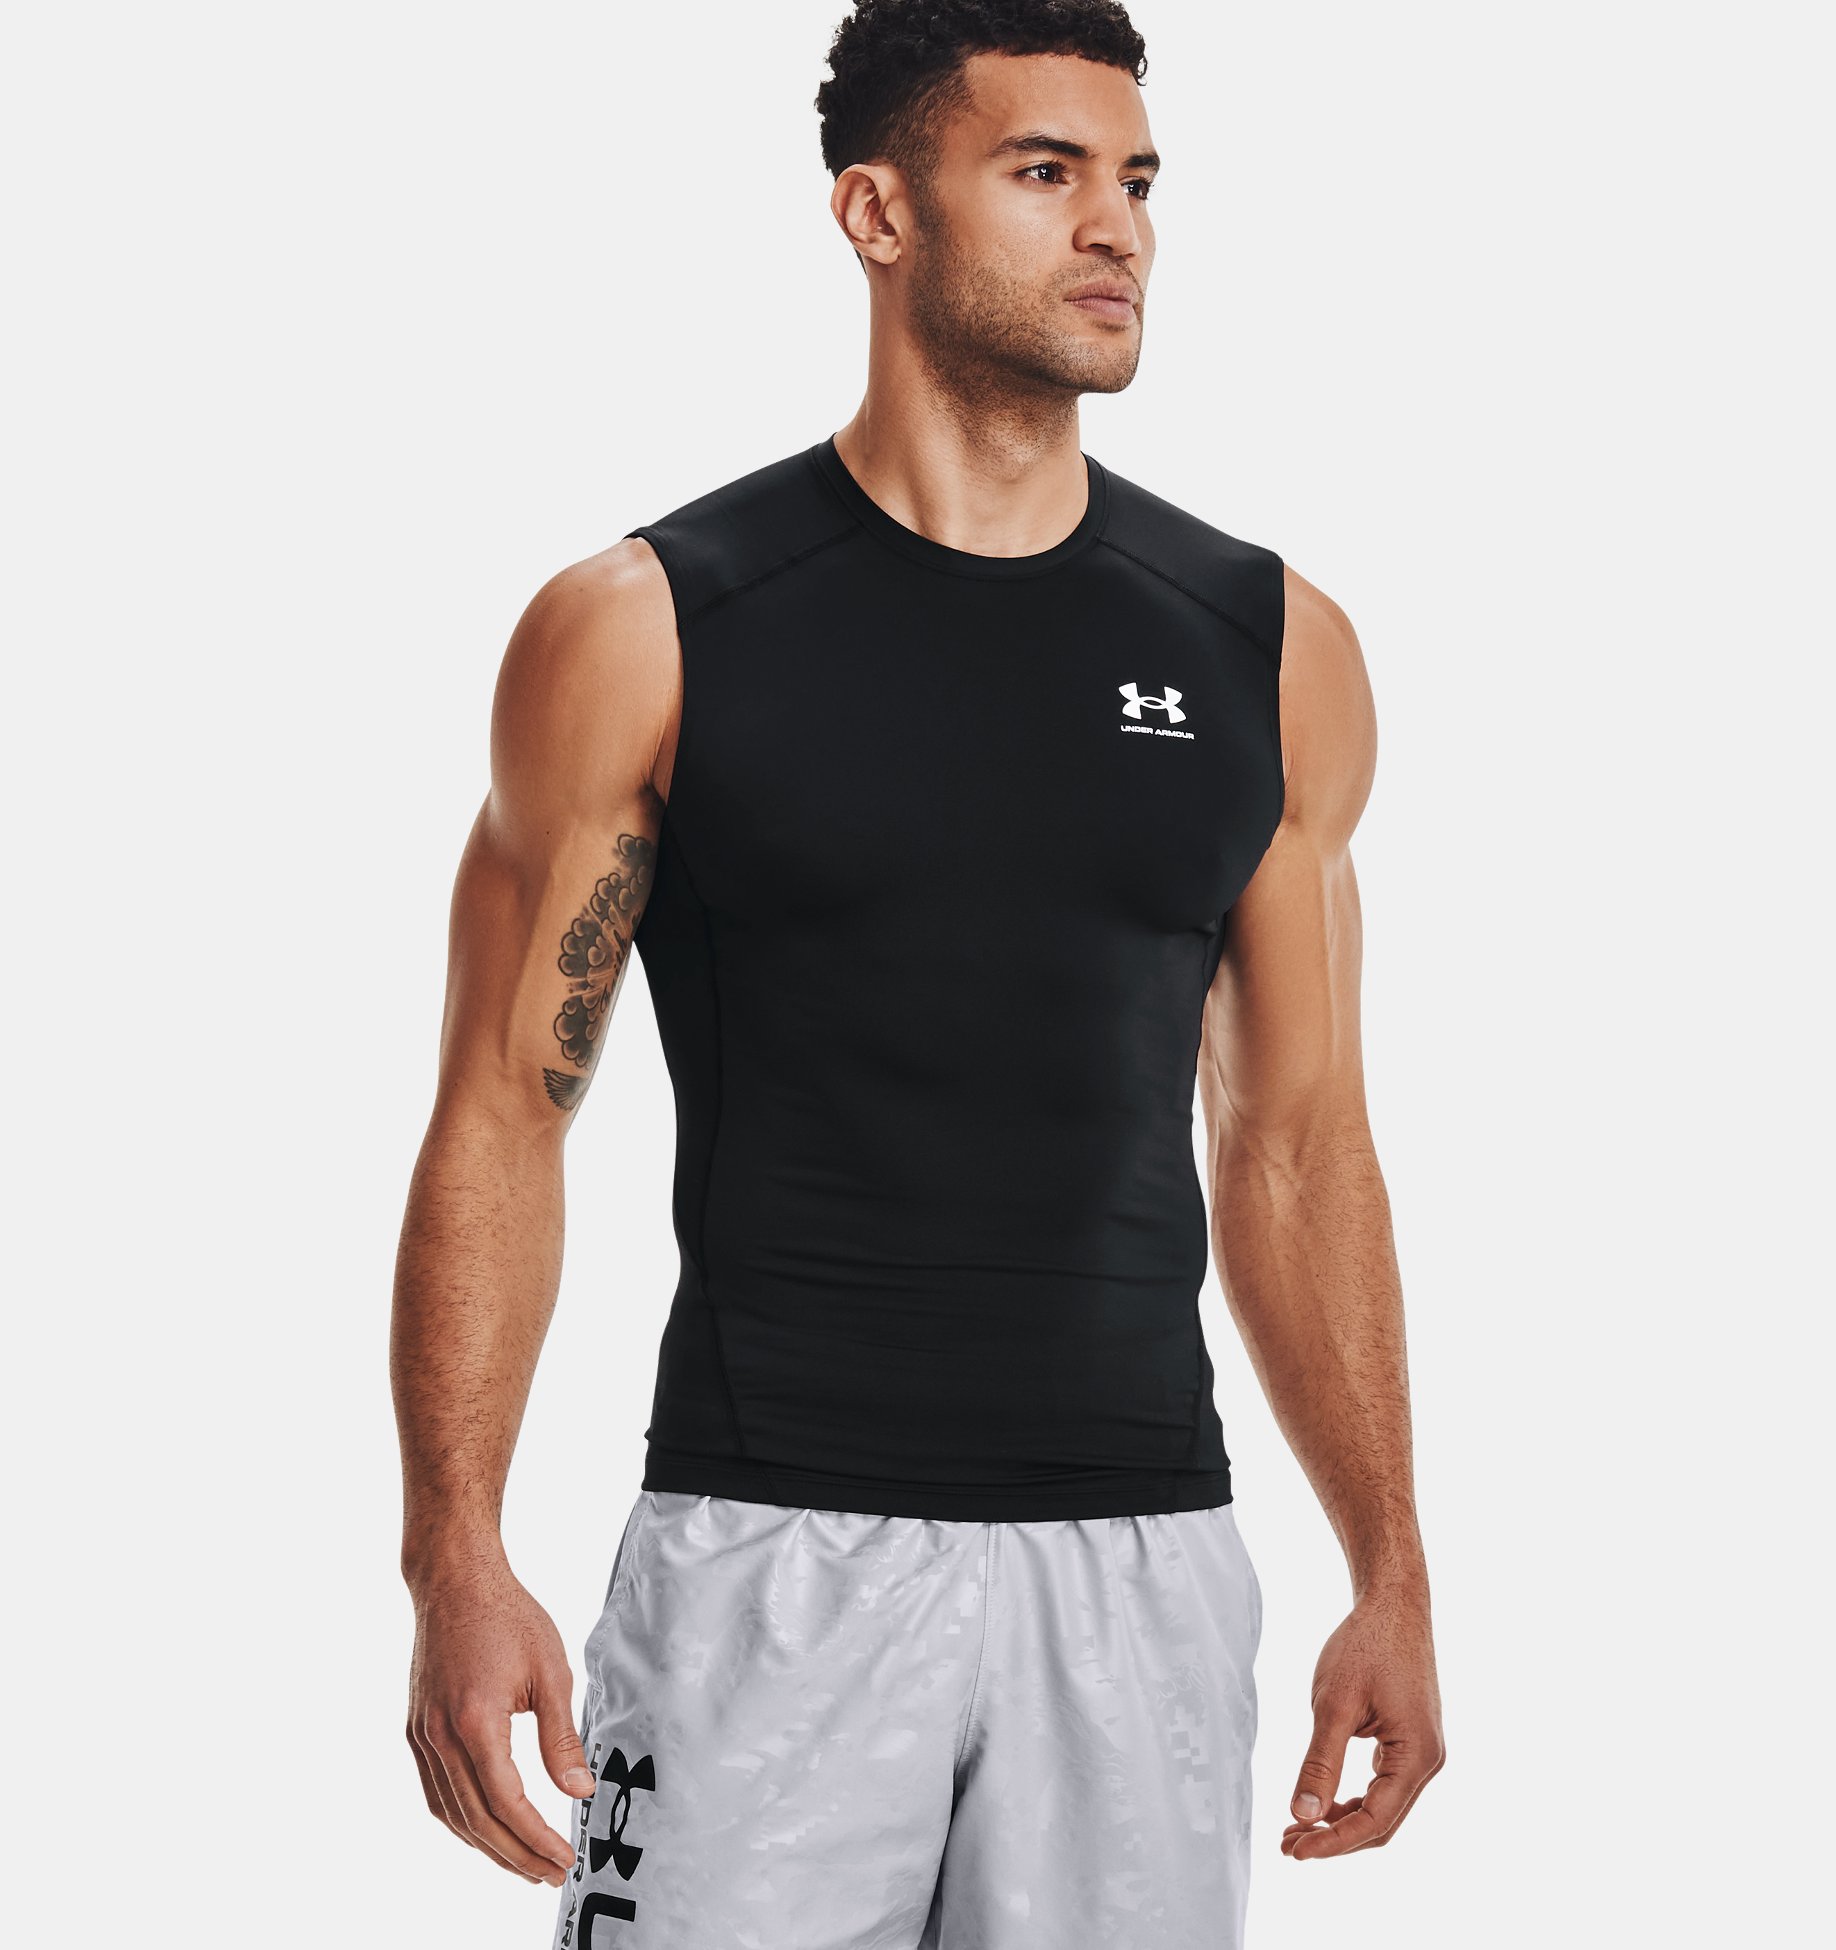 Under Armour Men's HeatGear Compression Sleeveless T-Shirt 